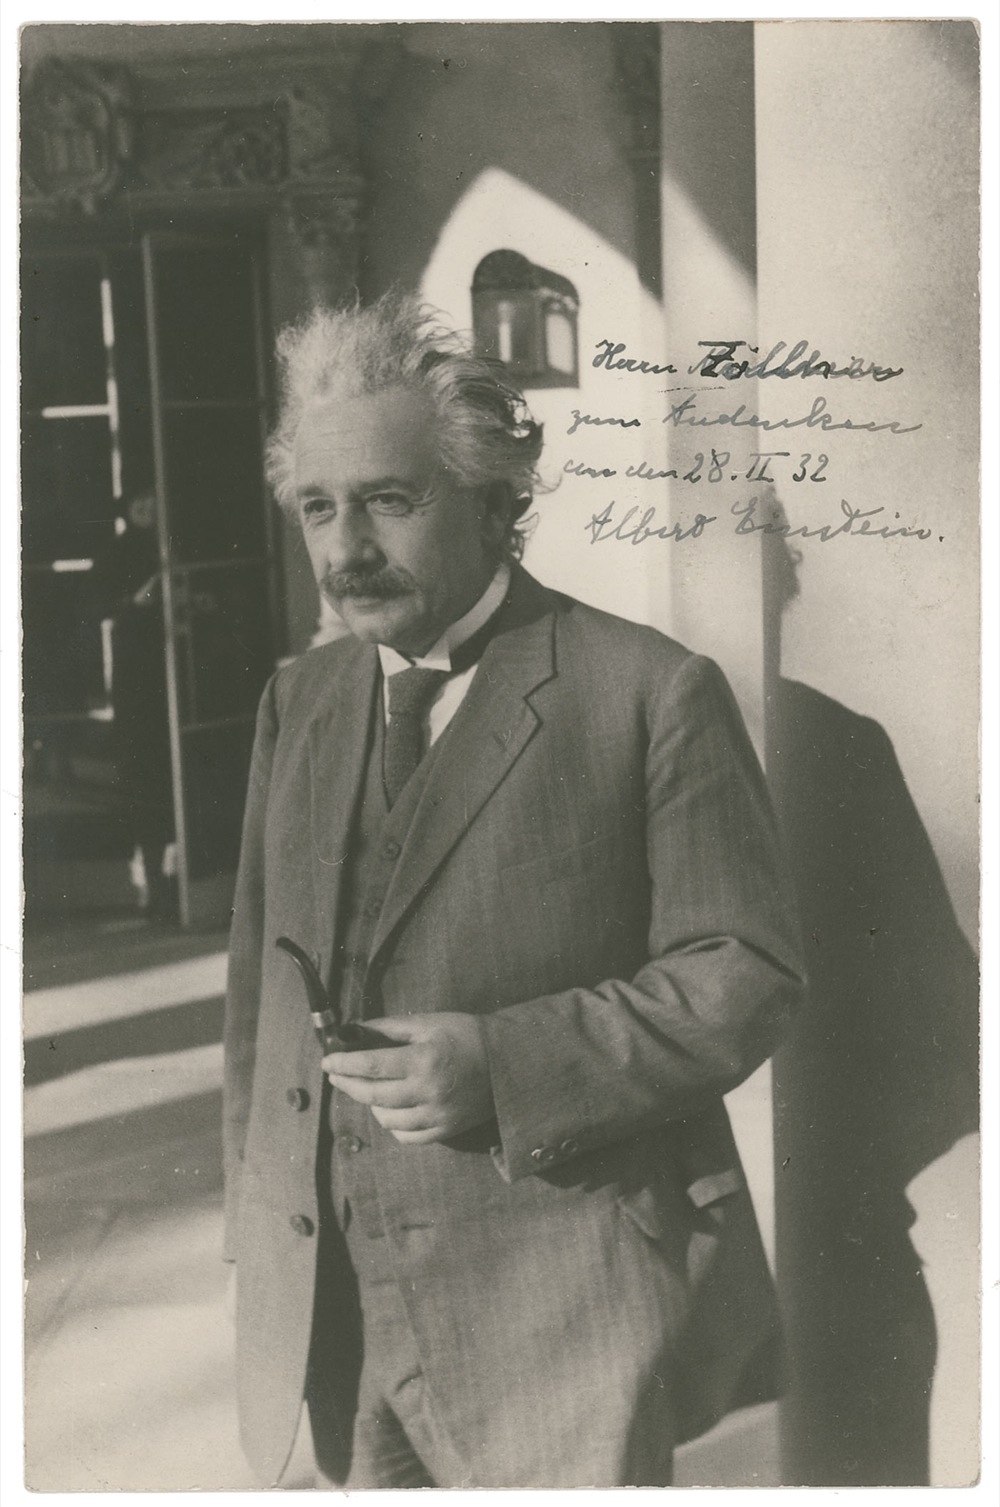 Lot #226 Albert Einstein